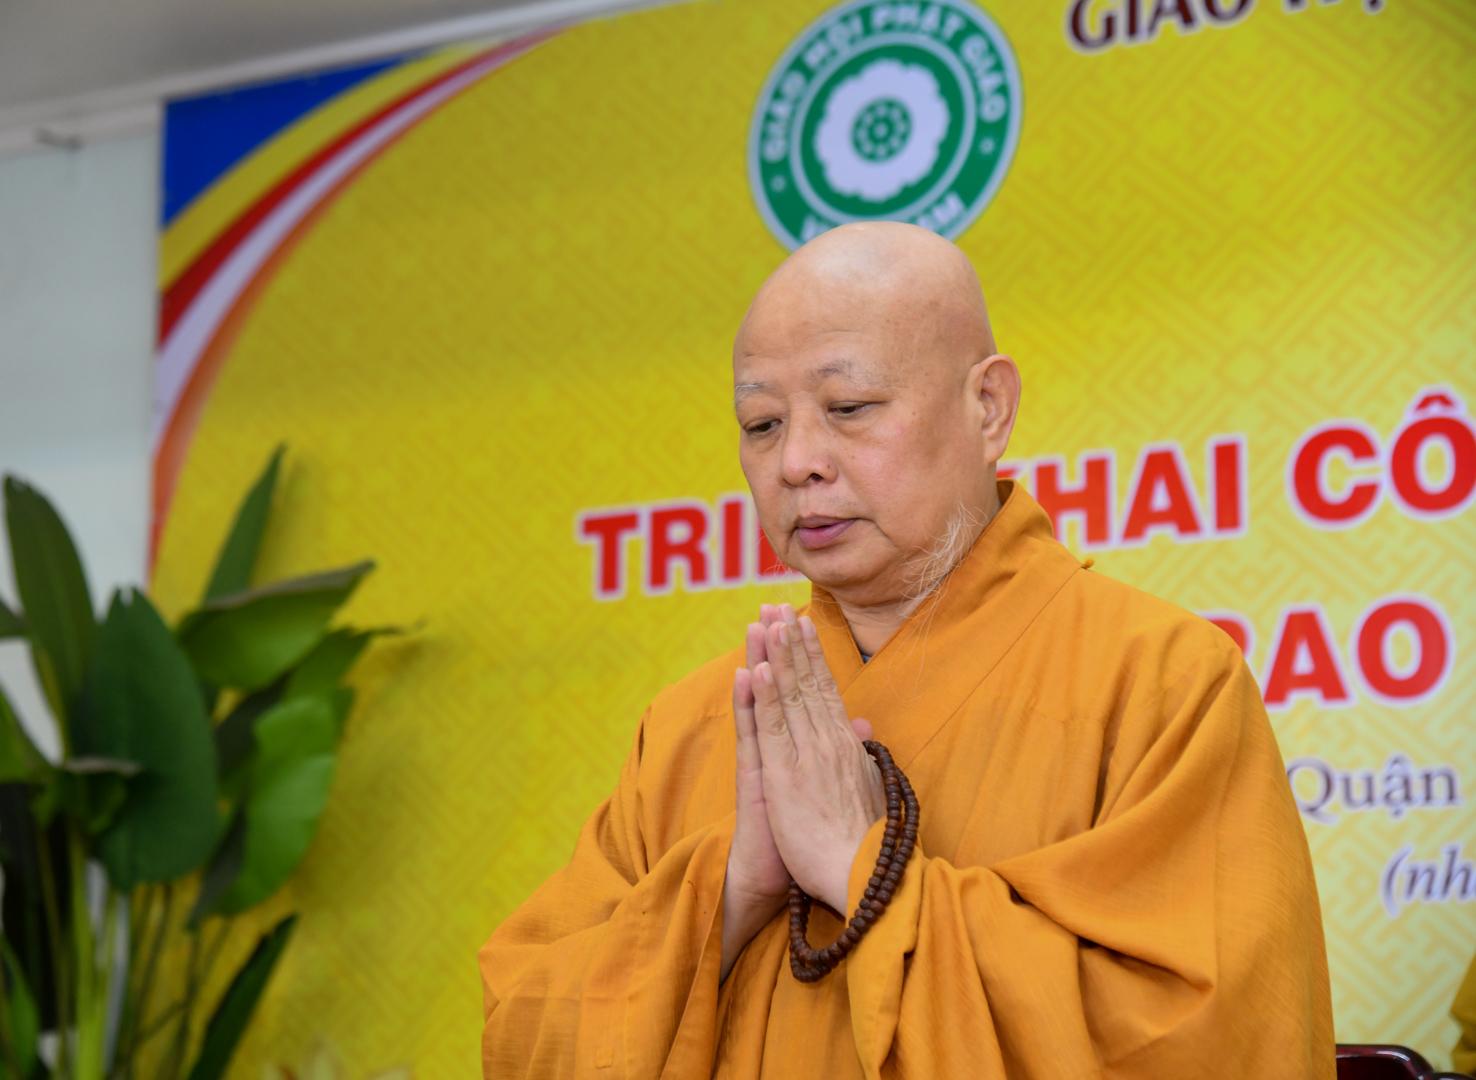 Phật giáo quận 10 họp triển khai công tác Phật sự năm 2023 và trao giáo chỉ tấn phong